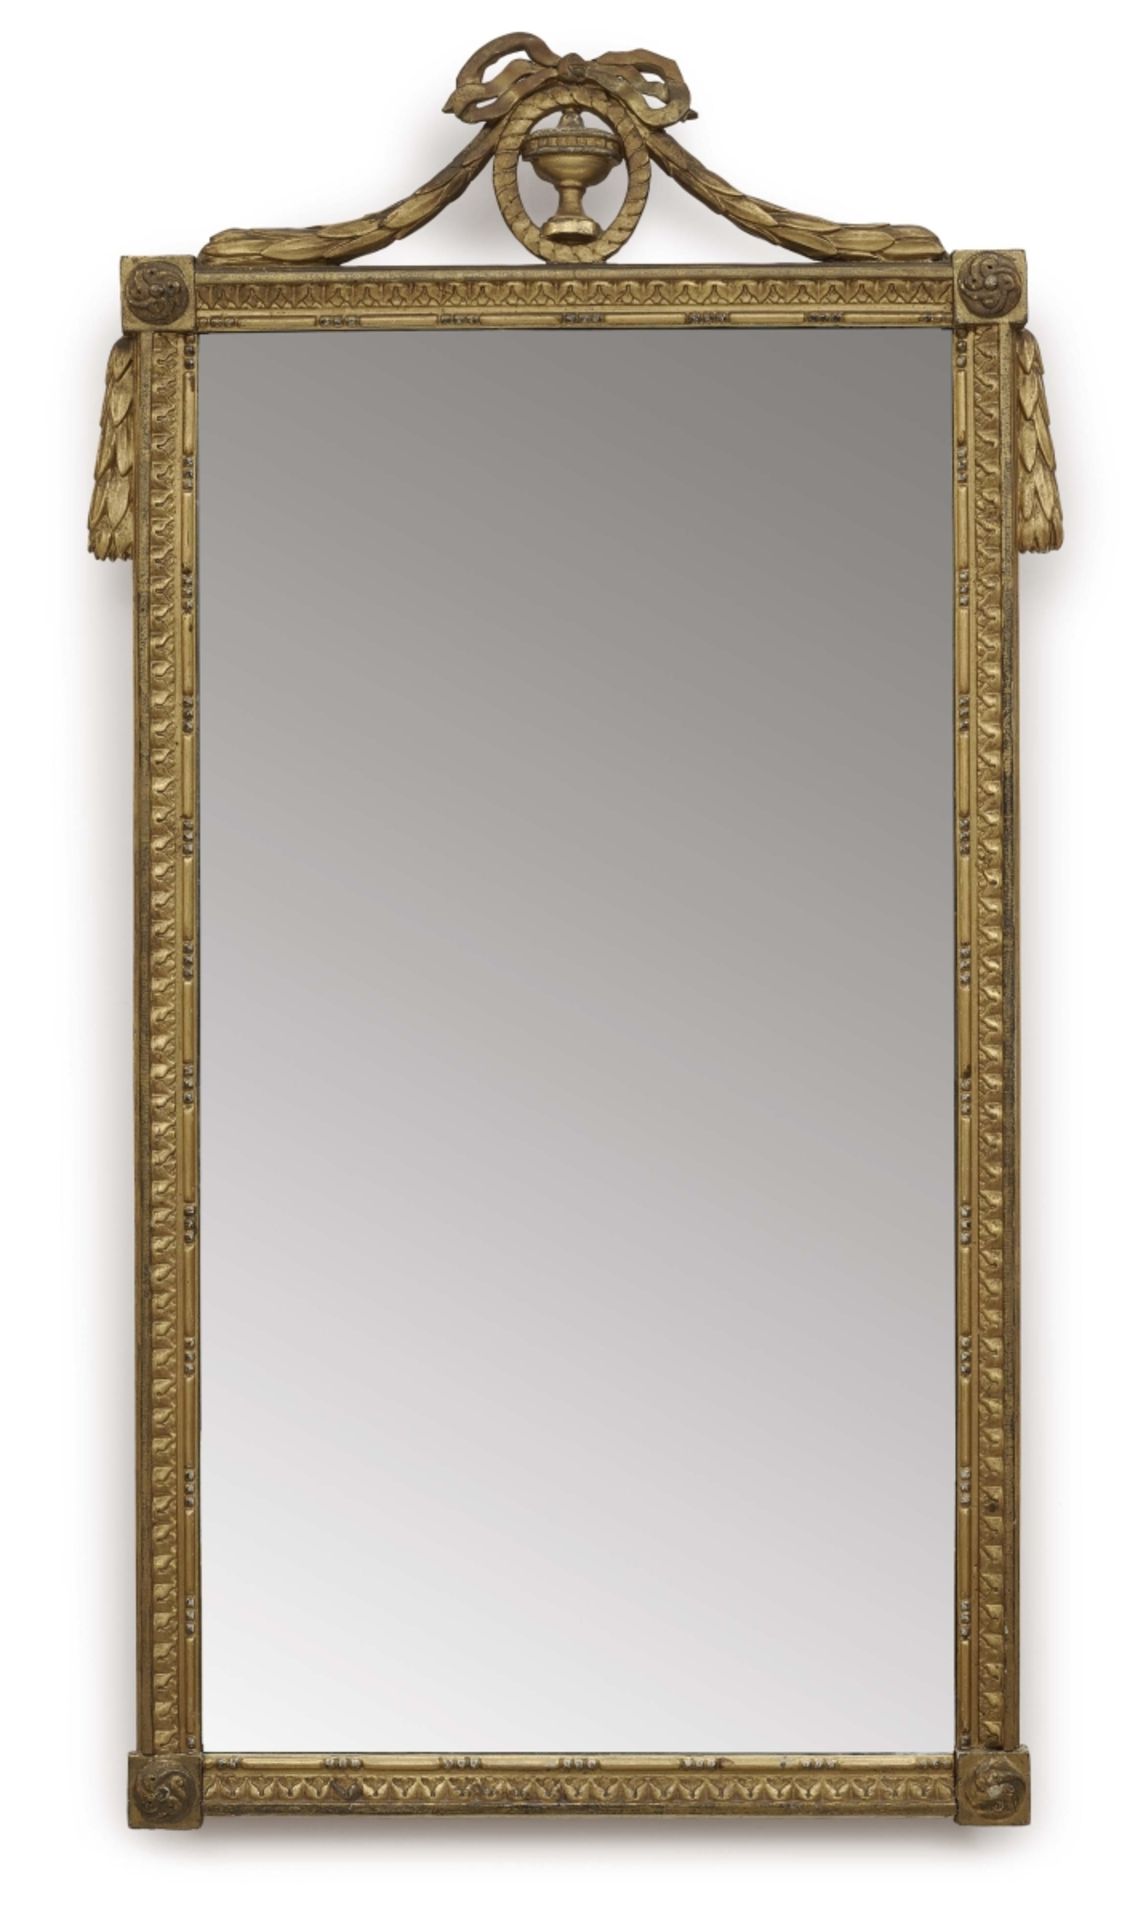 Spiegel Louis-XVI Stil Holz, gold gefasst. Rechteckrahmen mit Blatt- und Perlstabdekor sowie